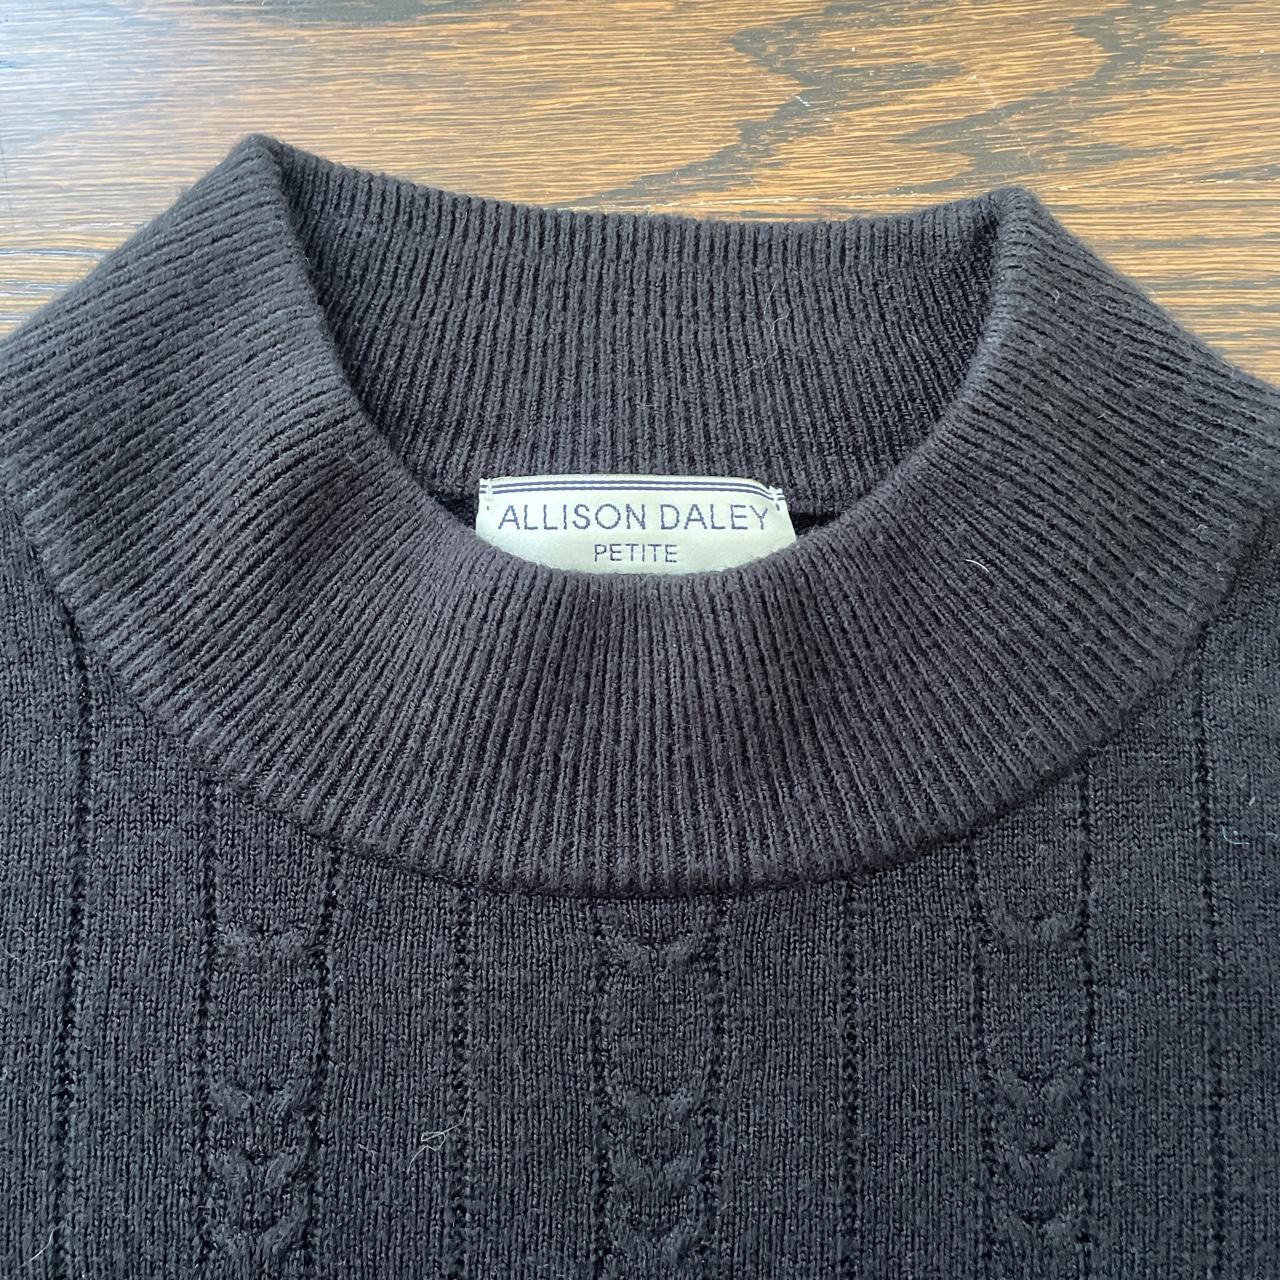 Vintage Allison Daley sweater Mock neck, cable knit... - Depop